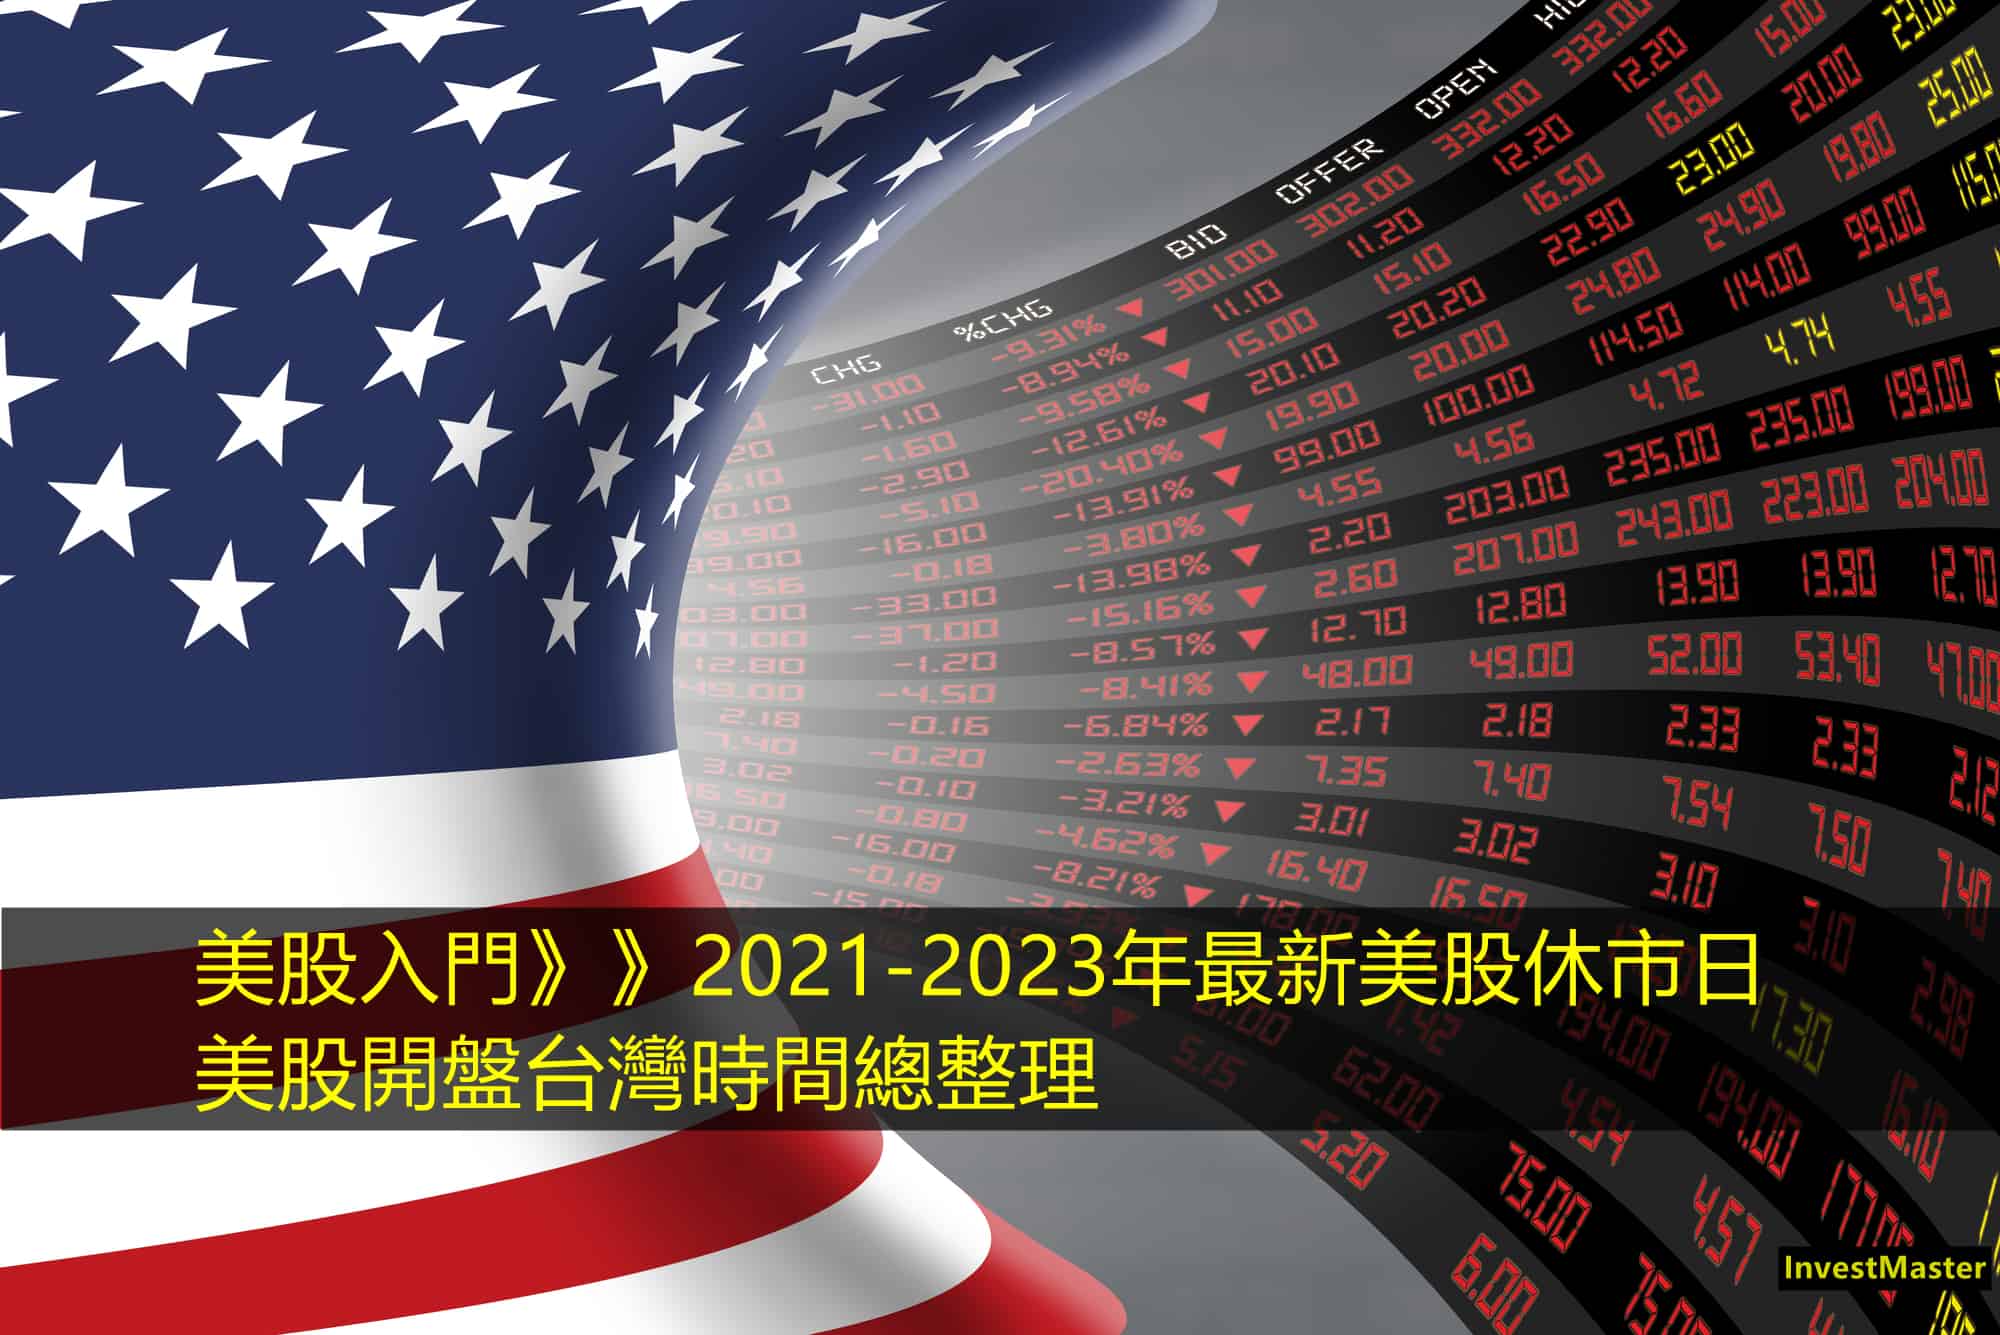 2021年最新美股休市以及開盤時間